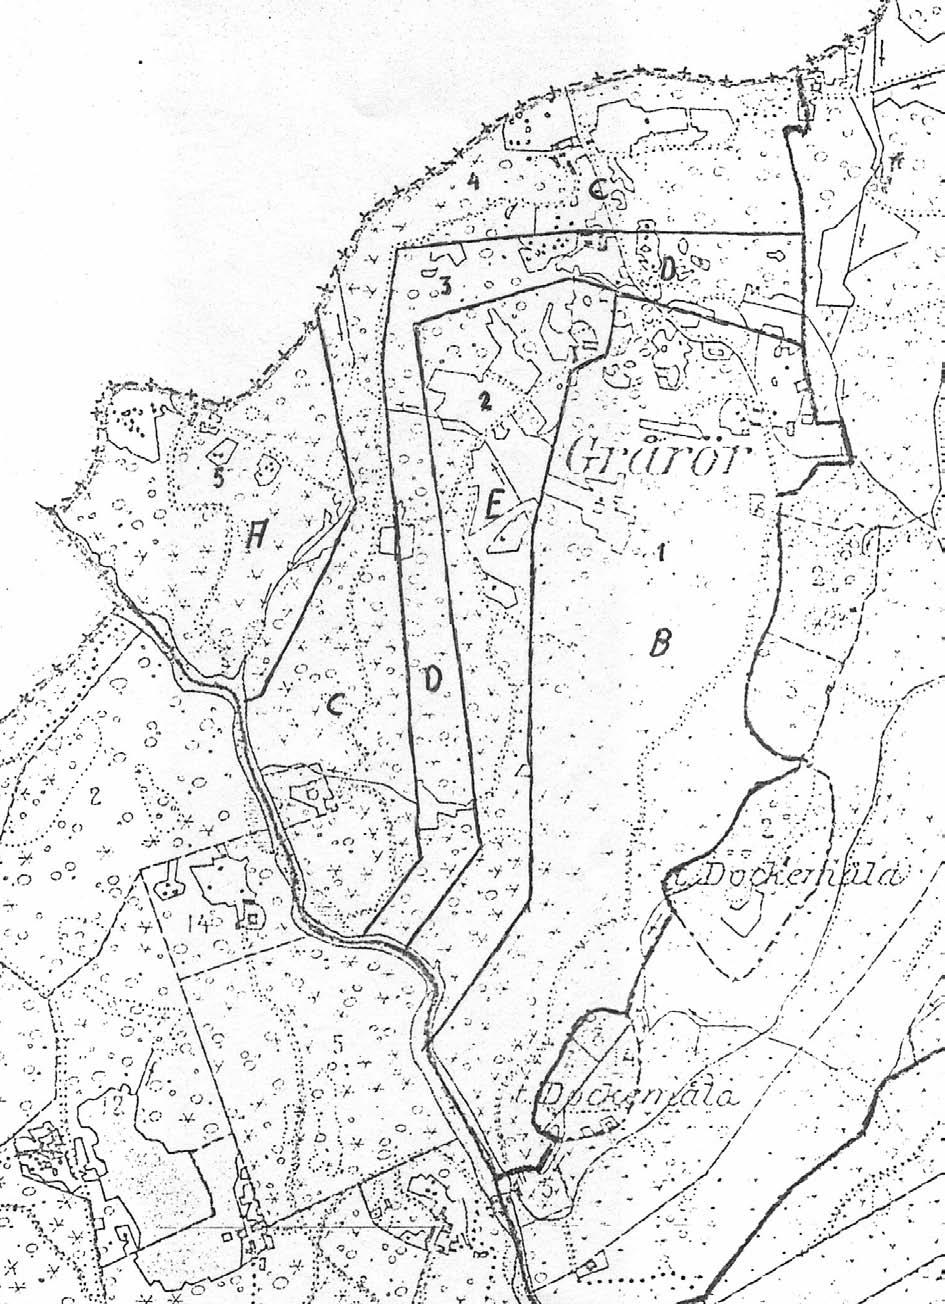 Grårör Grårörs gränser på gårdarna år 1820 med en liten ändring.